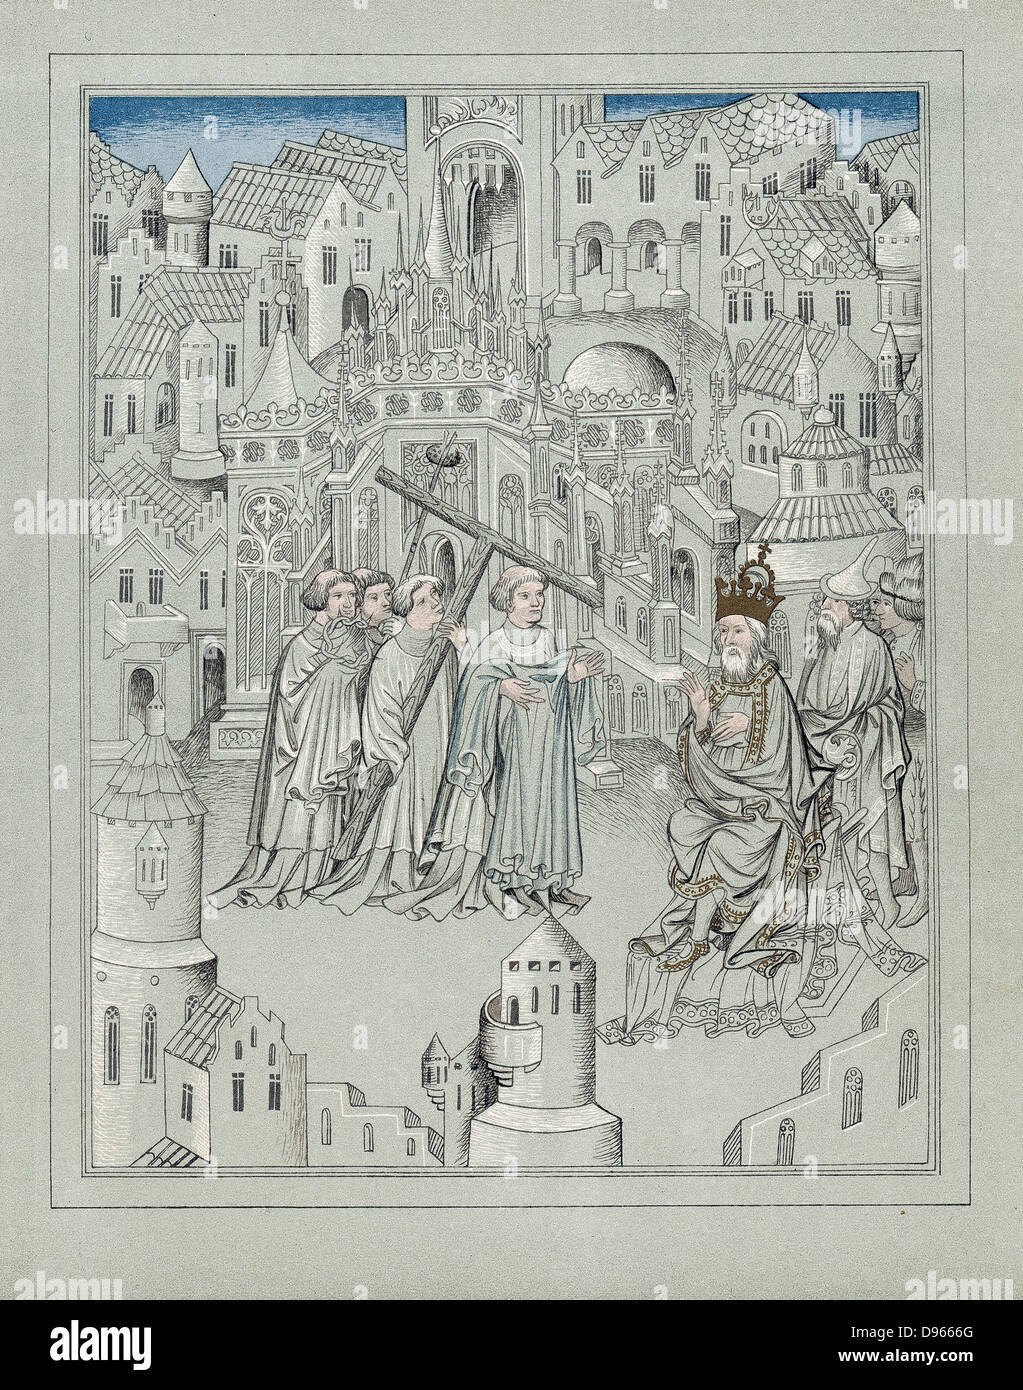 Facsimile della illustrazione da viaggi del leggendario Sir John Mandeville, c1372. Il cavaliere inglese. Figure centrali portano i simboli della passione di Cristo, una croce, una corona di spine e aceto-spugna bagnata sul bastone. Foto Stock